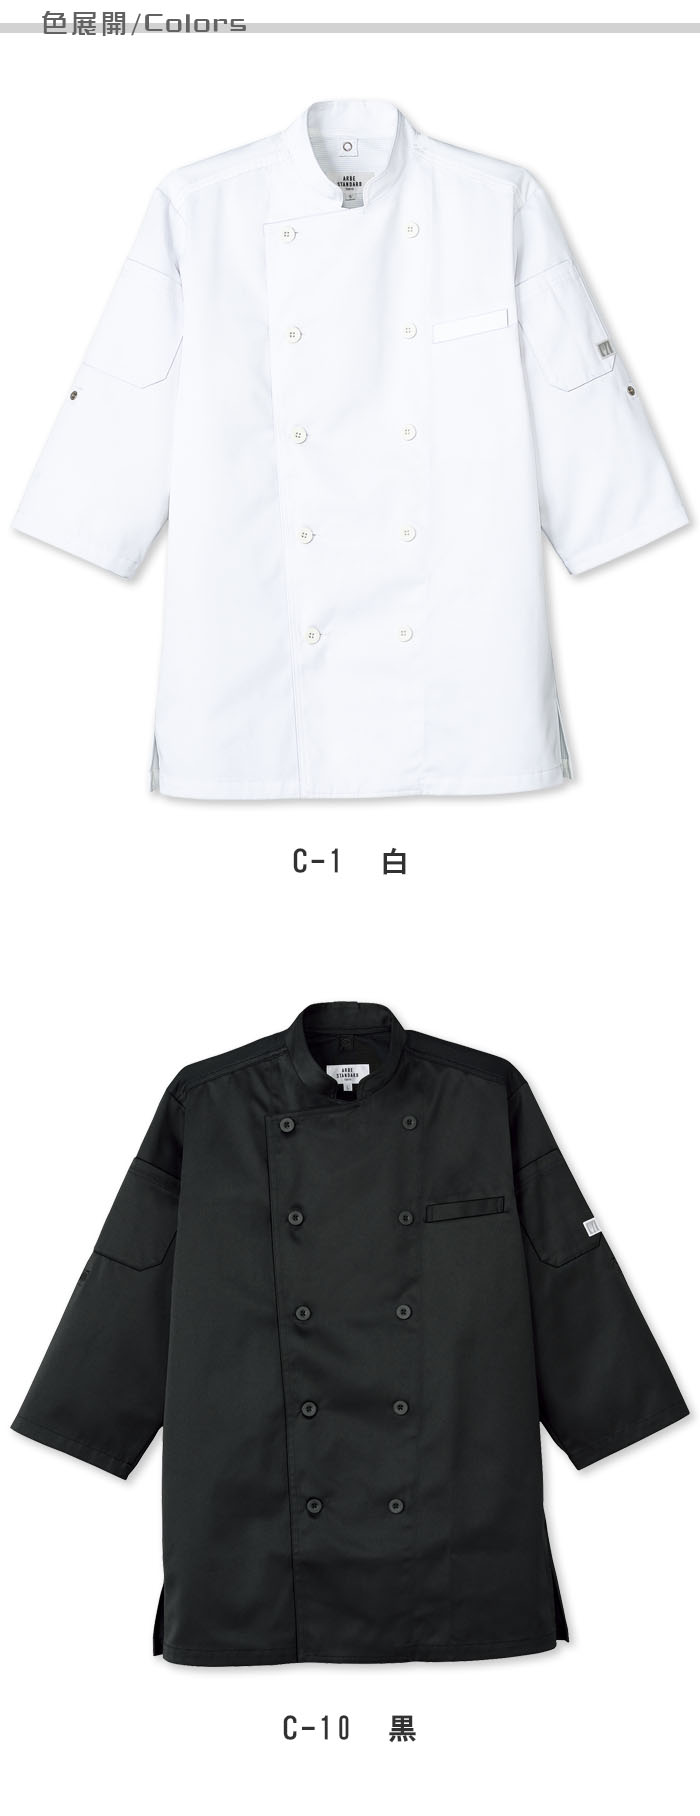 熱を逃して涼を取り込む　涼しいボタンコックシャツ【白・黒】兼用  色展開説明